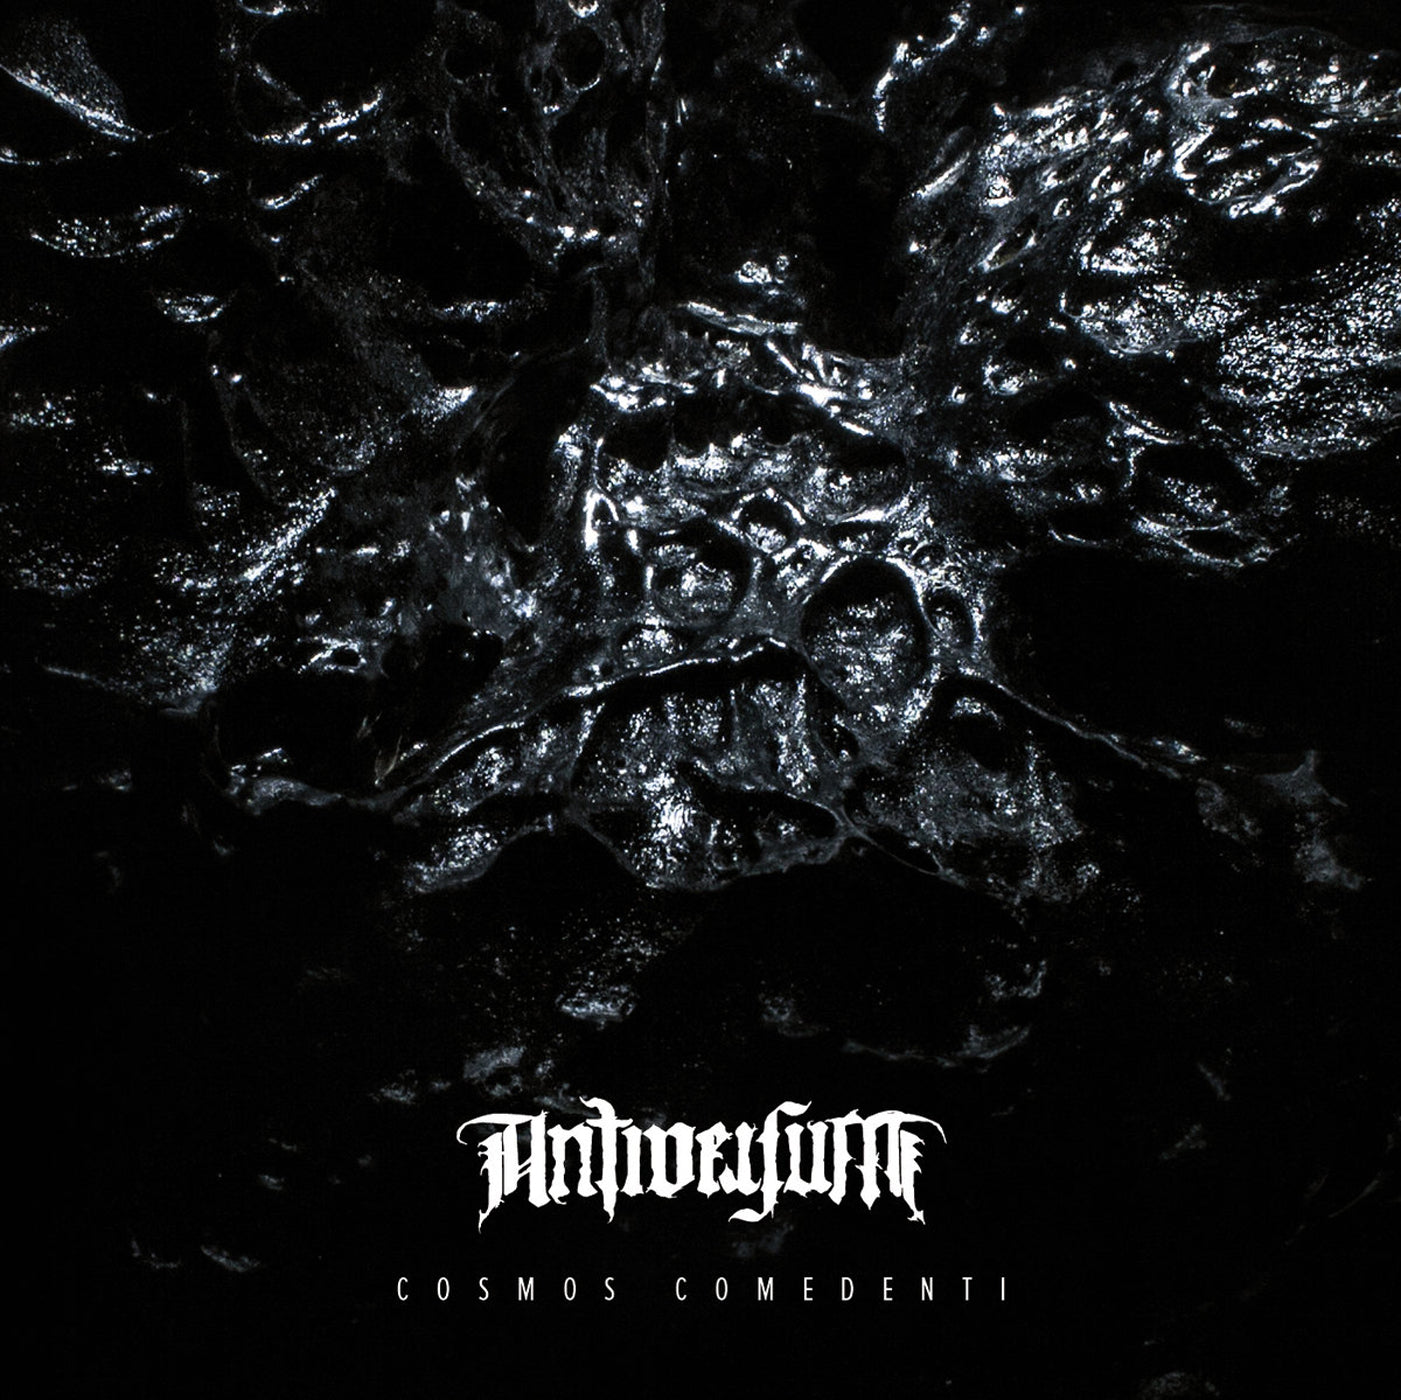 Antiversum - Cosmos Comedenti LP (regular black vinyl)